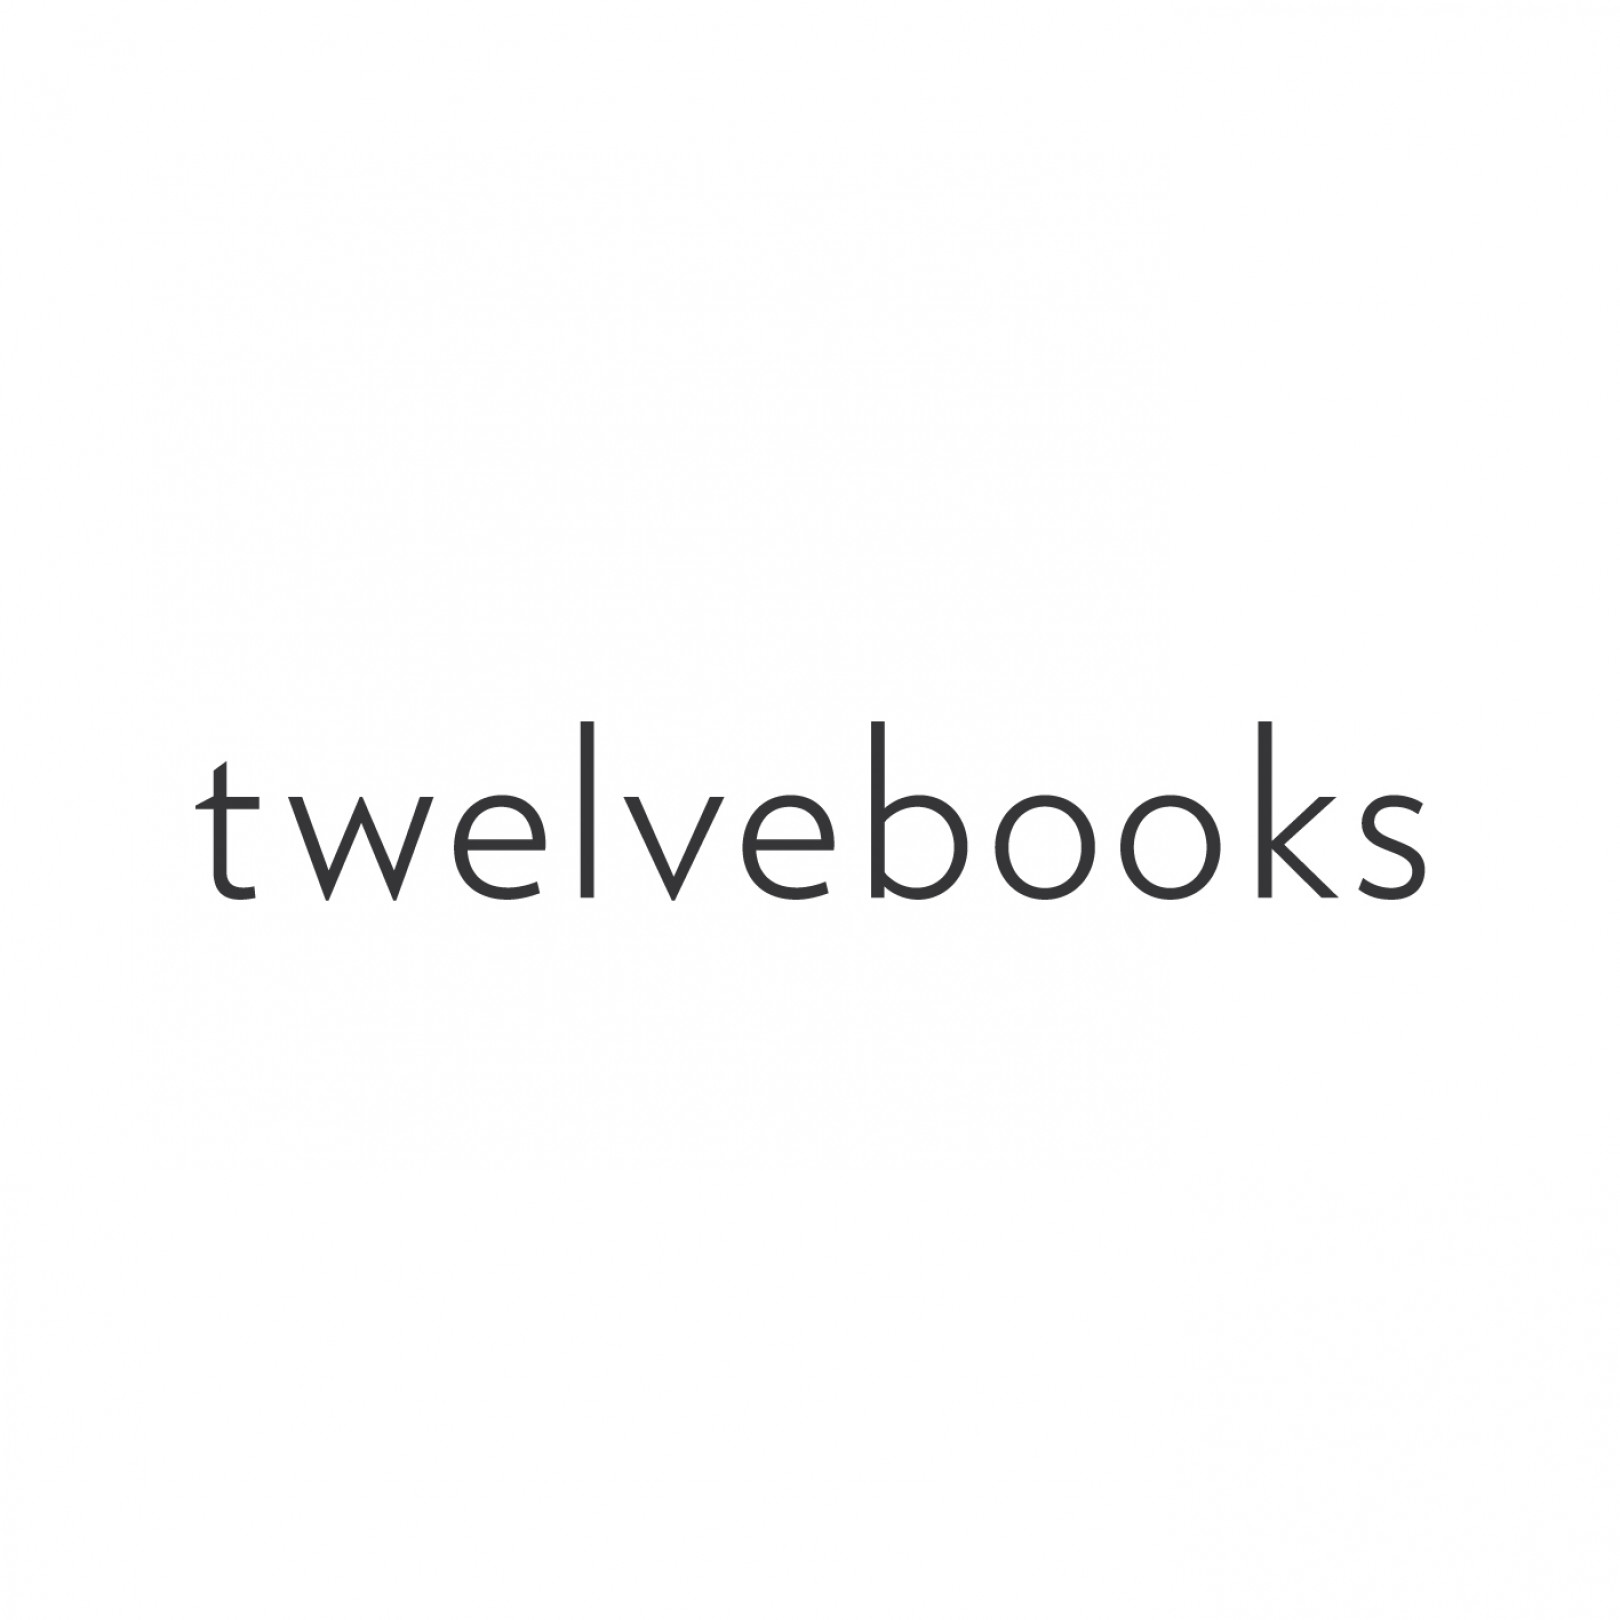 twelvebooks